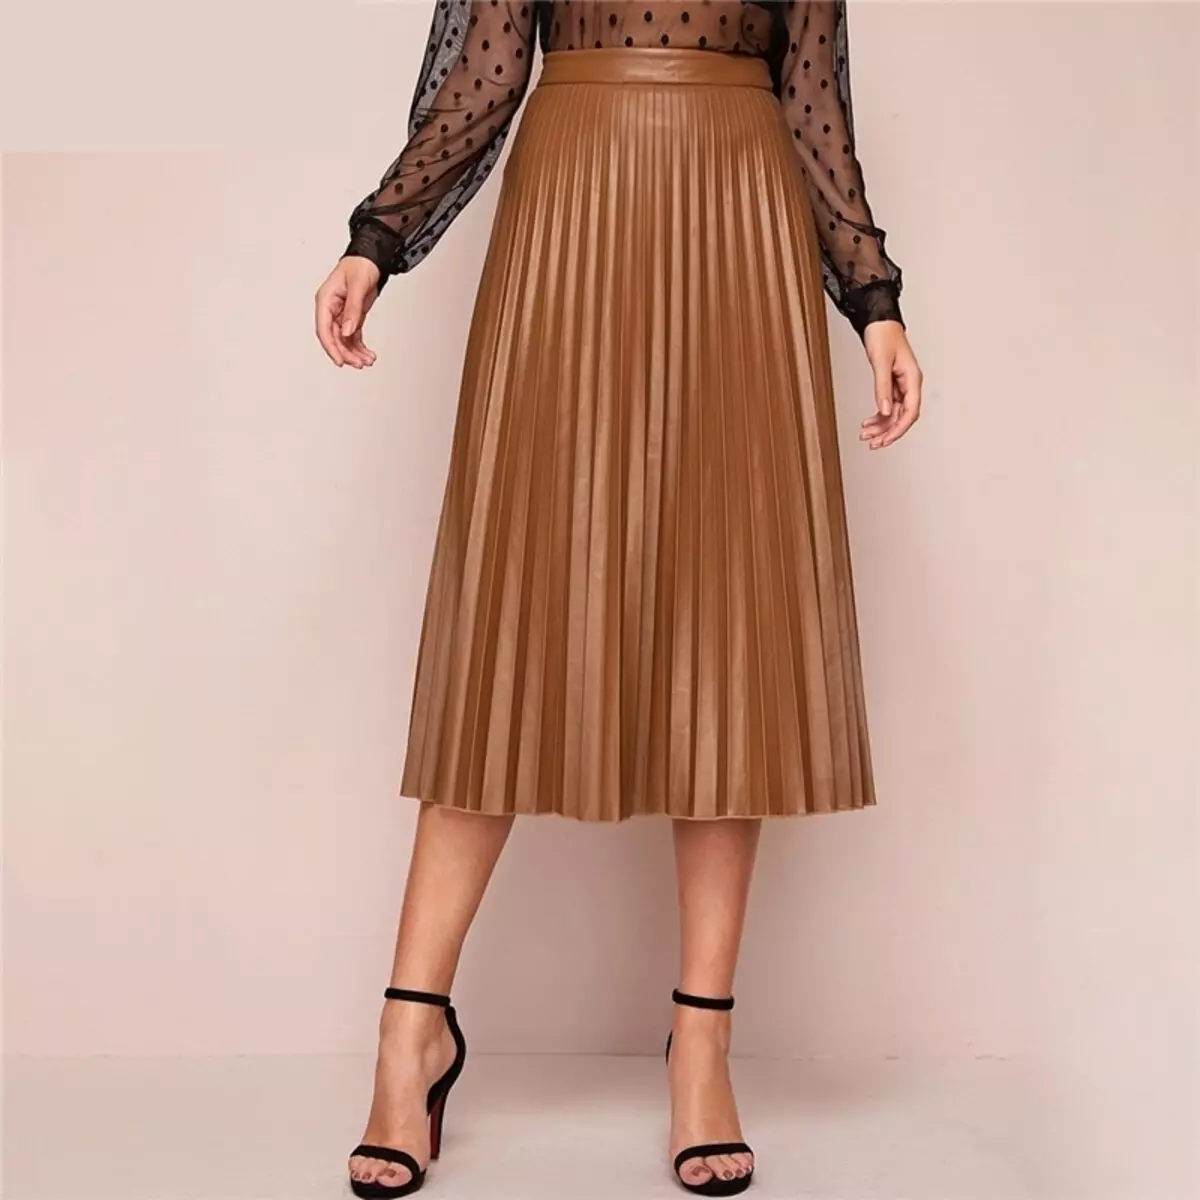 Placs Skirt Kulit: Apa yang perlu dipakai Rok Eco-Piece Pleated? Imej dengan skirt kulit tiruan hitam dan coklat 800_29